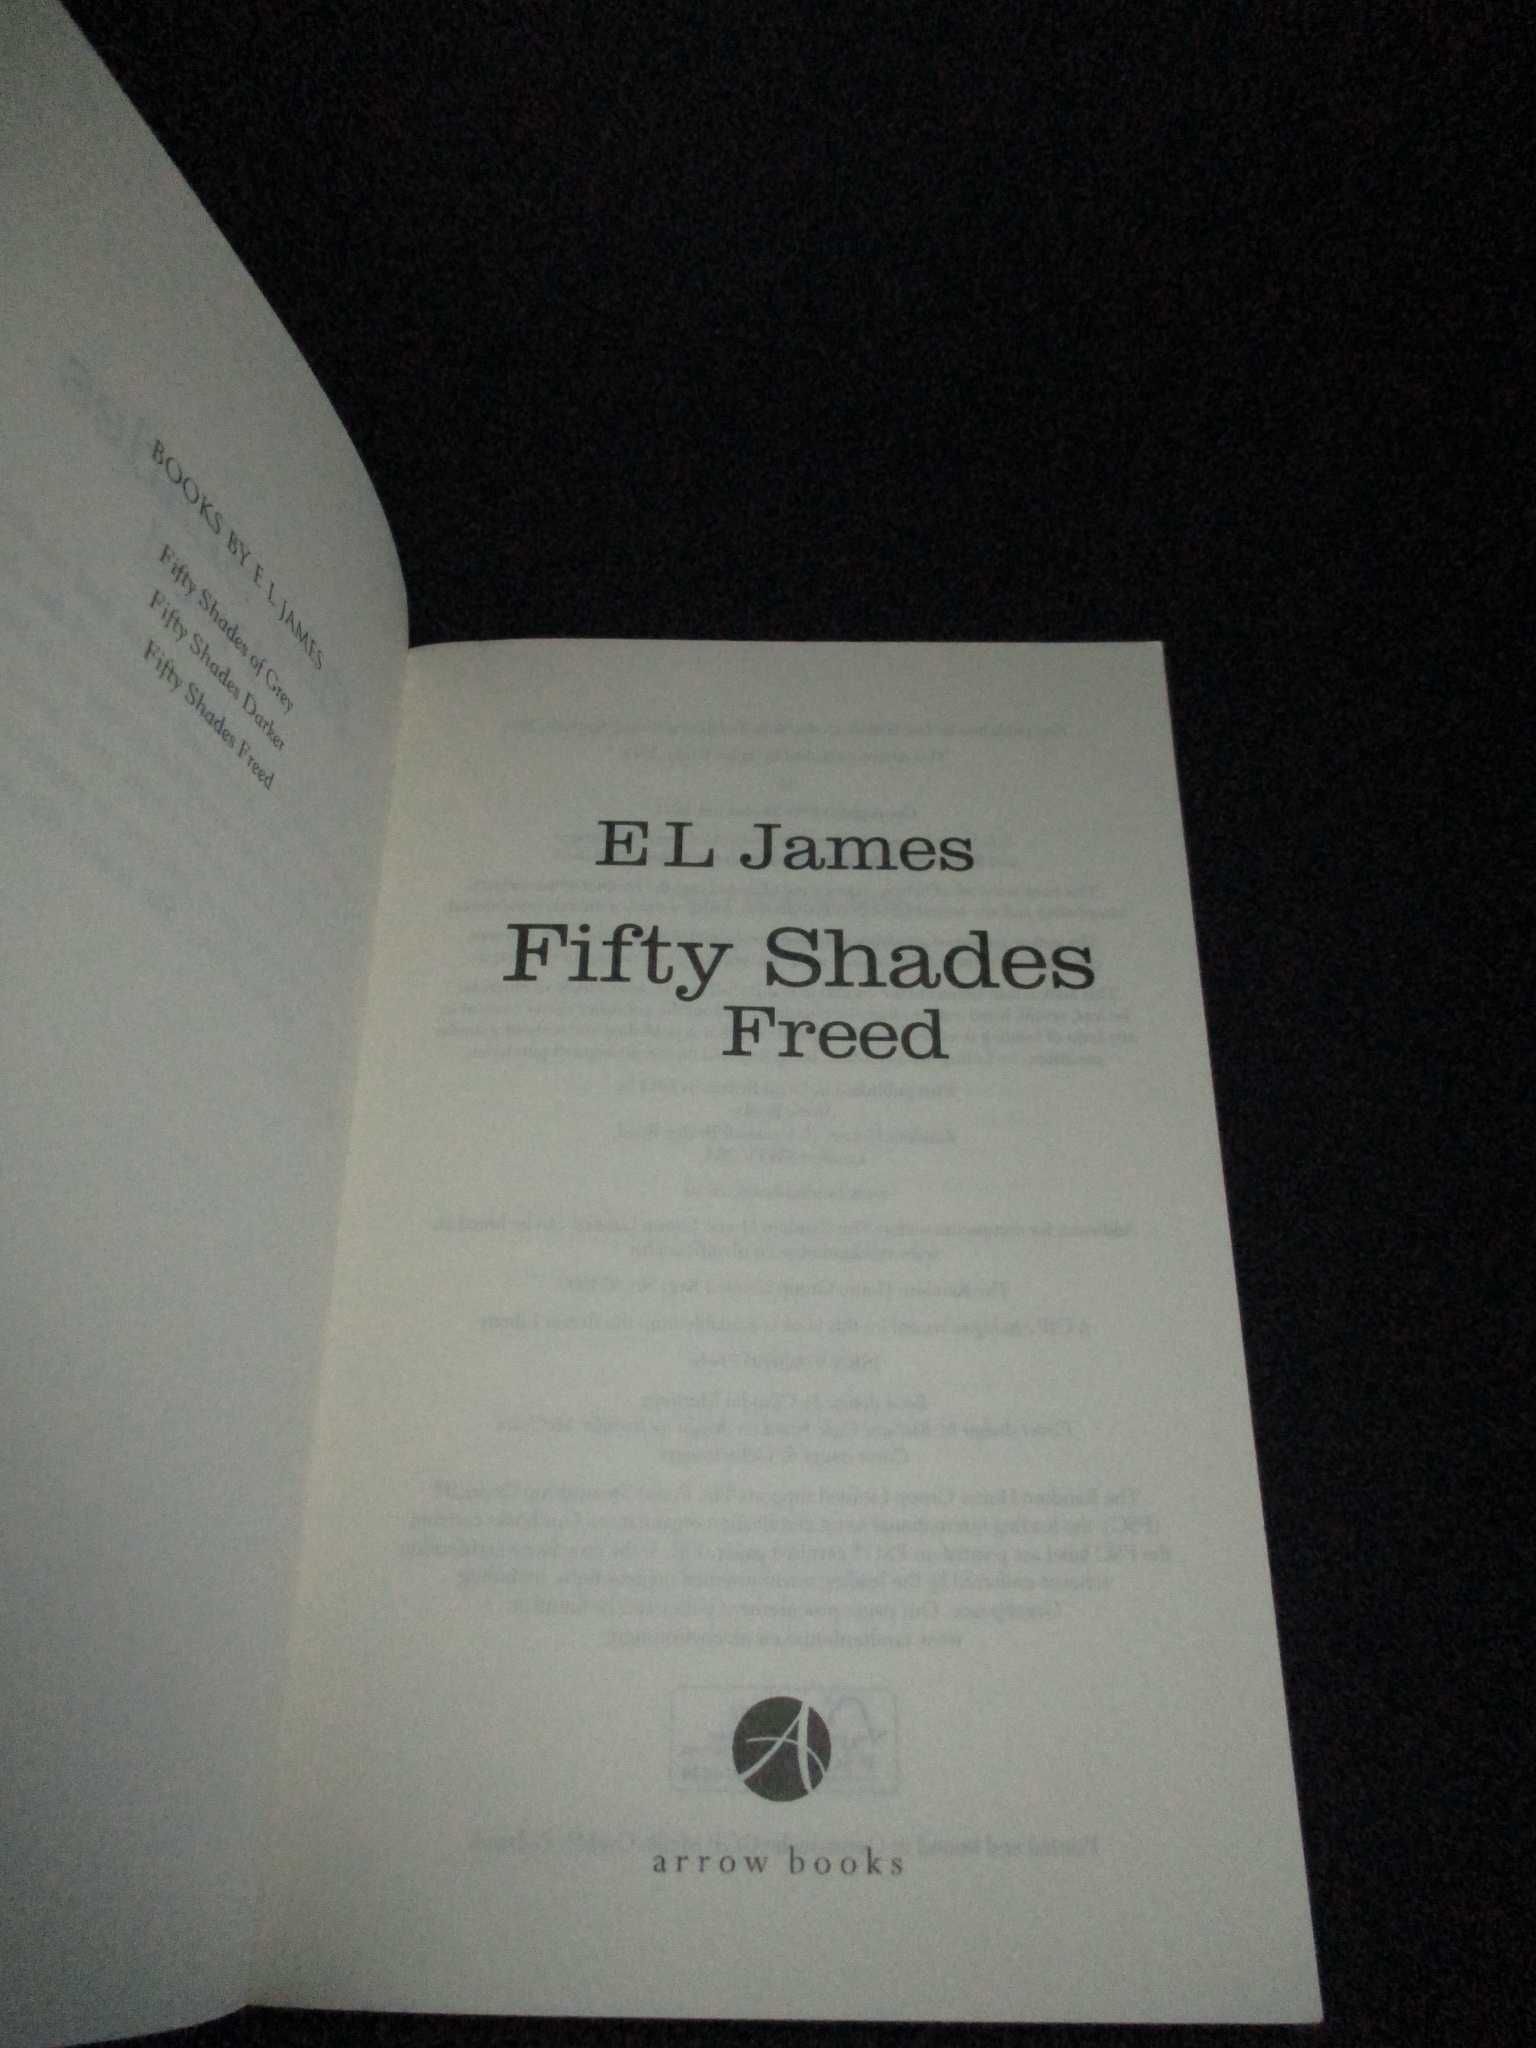 Livros Trilogia Fifty Shades of Grey E. L. James